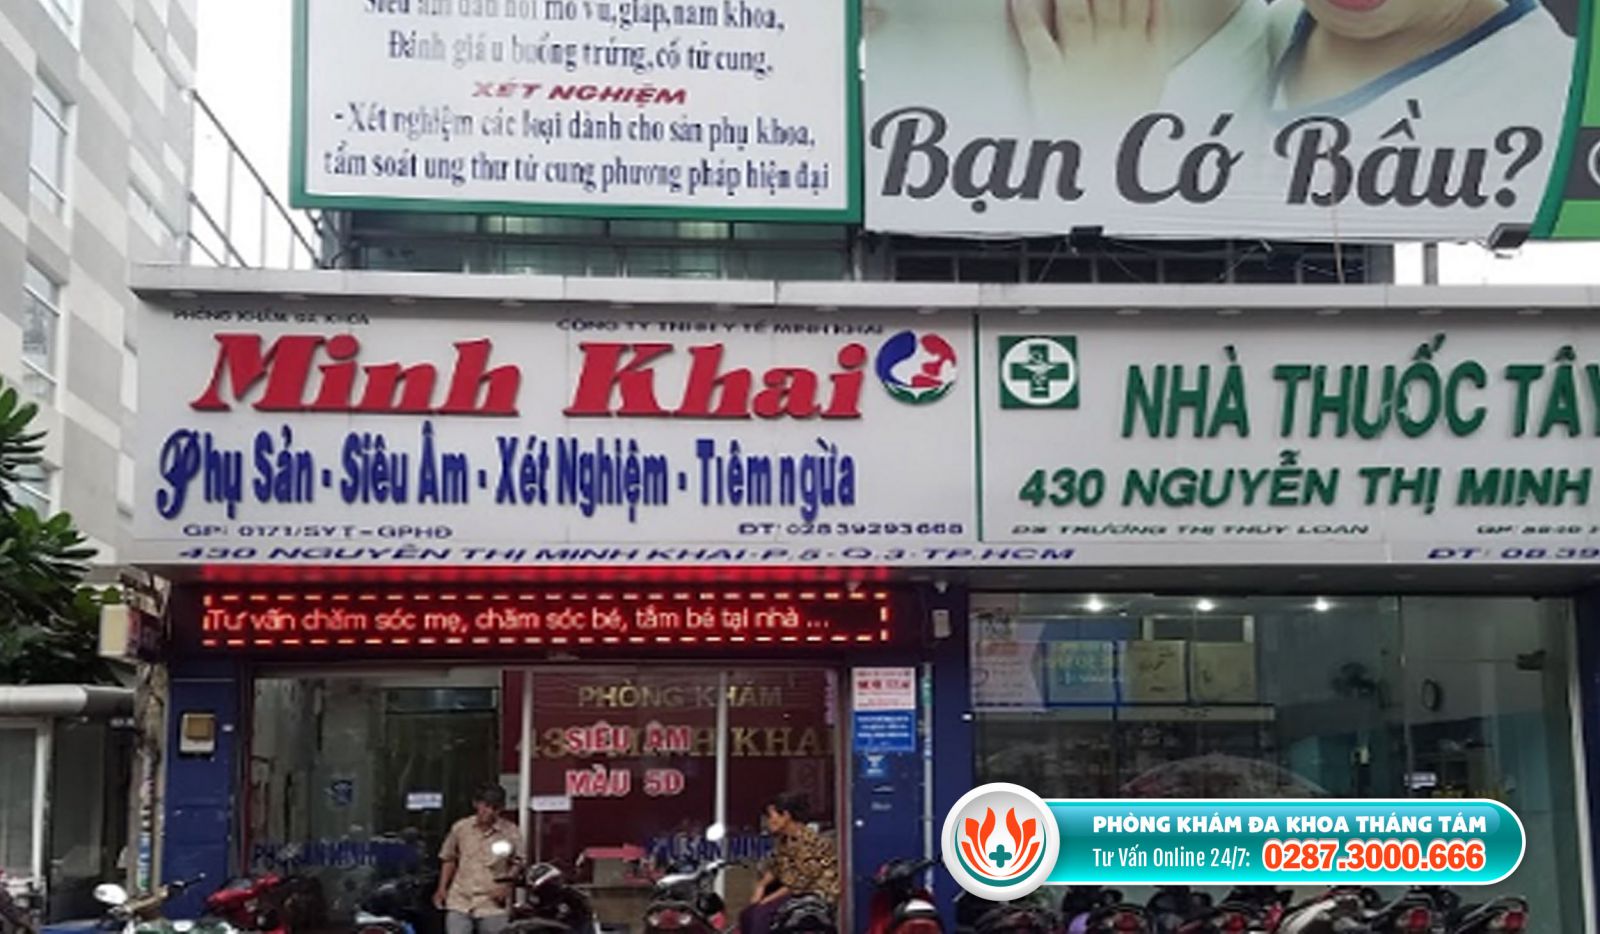 Phòng khám Phụ sản Minh Khai là cơ sở y tế phá thai tốt